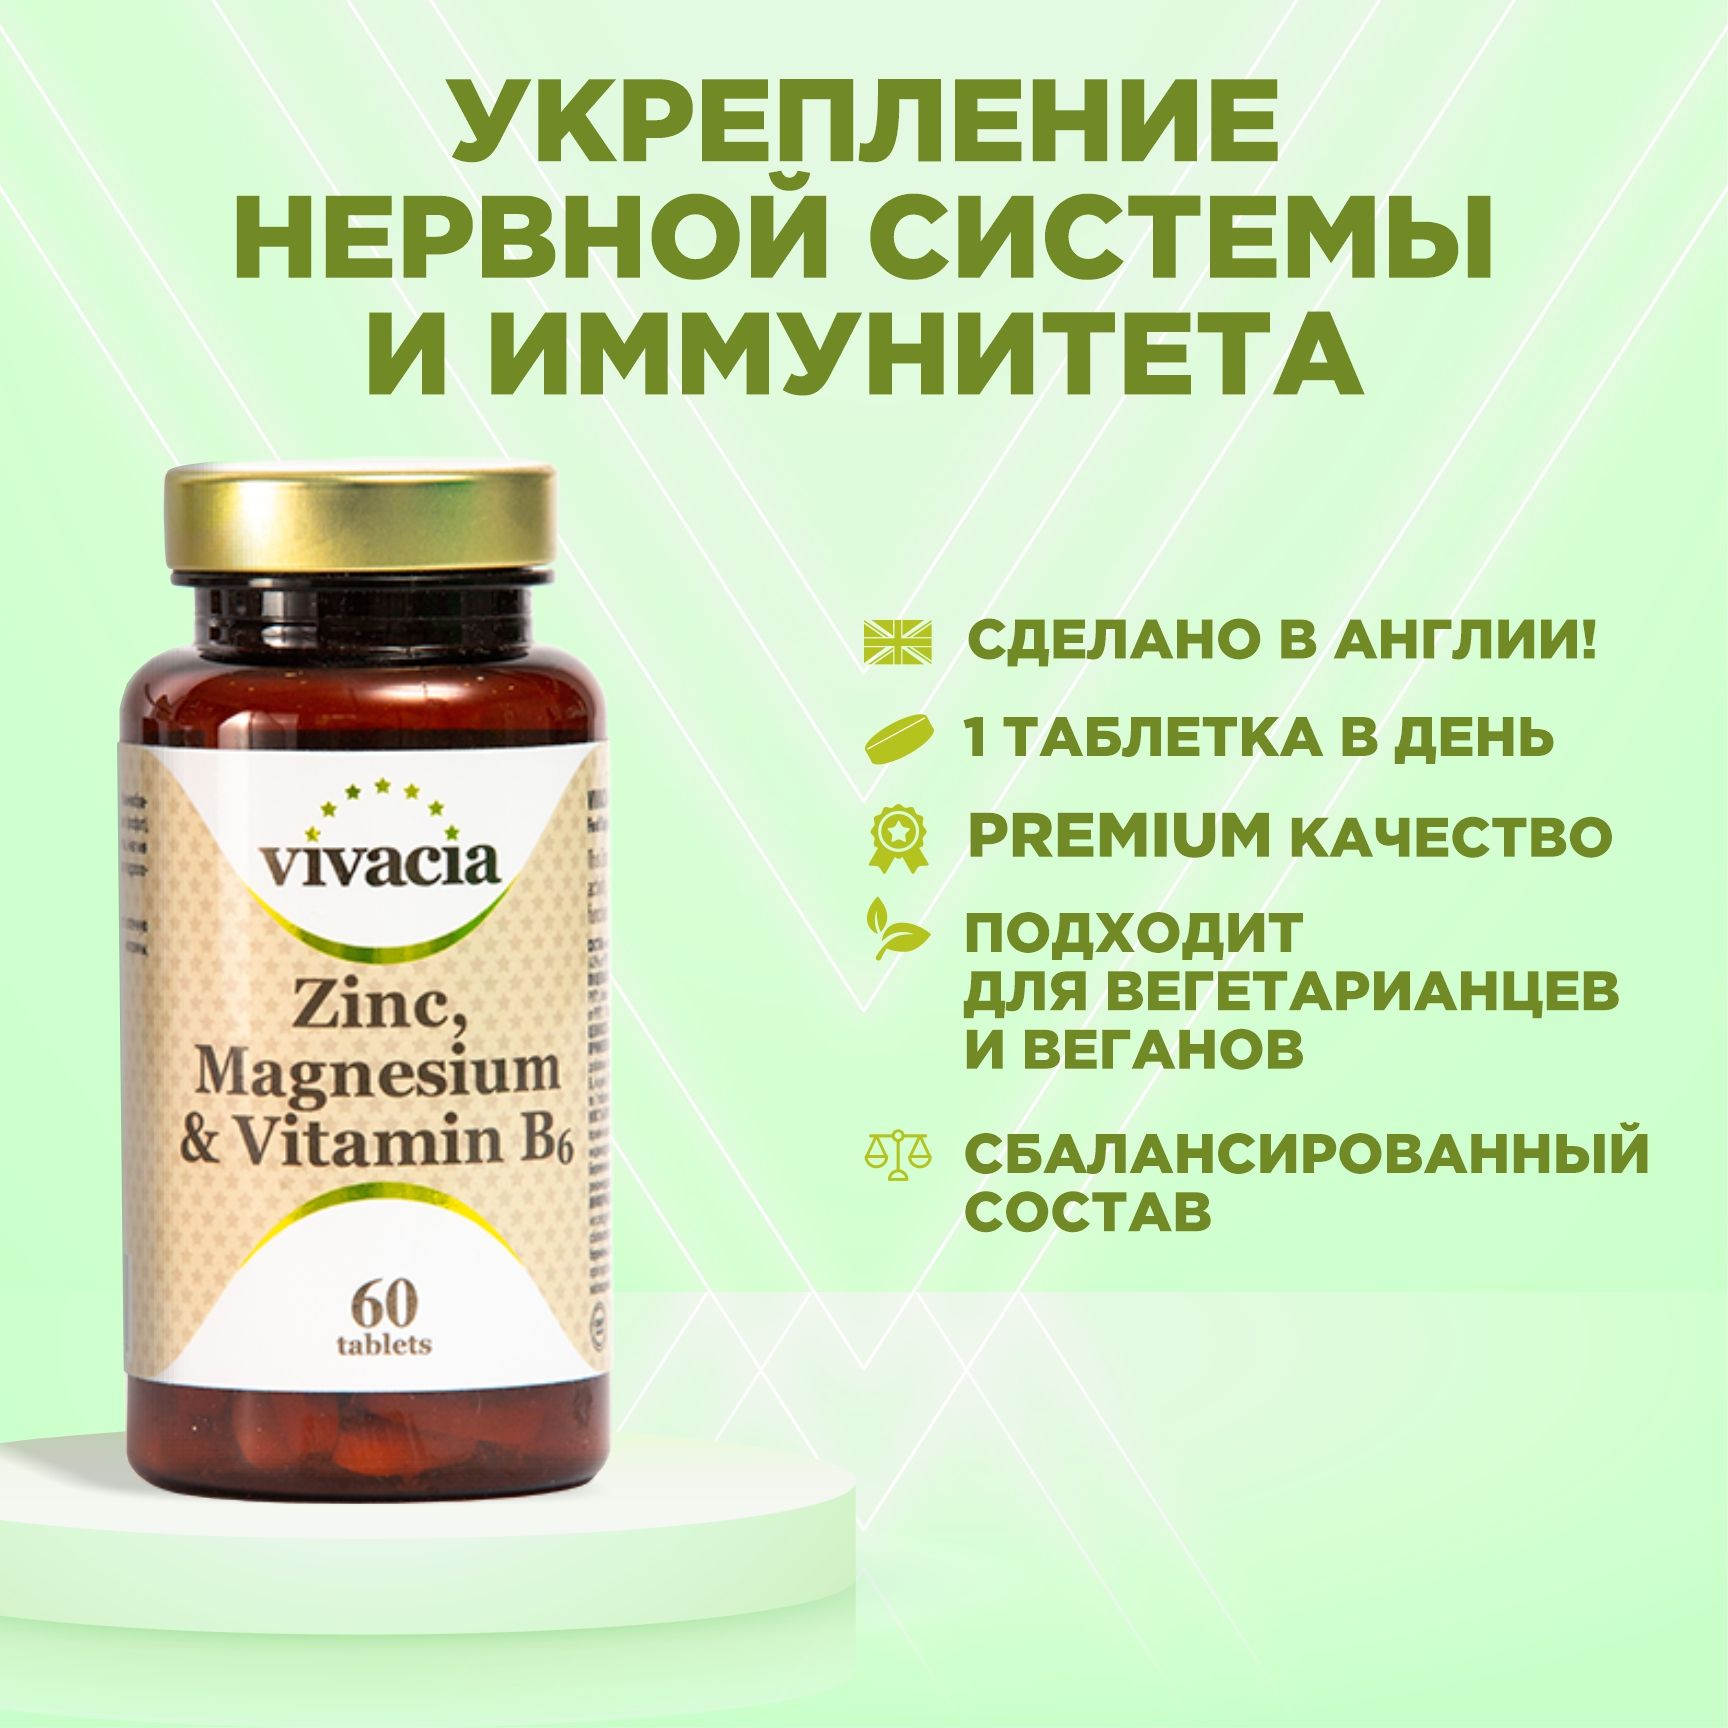 Vivacia vitamin. Цинк магний и витамин в6 таб 60 шт vivacia Вивация. Вивация витамин магний цинк магний в6. Вивация цинк Магнезиум в6. Витамины для нервной системы взрослого.